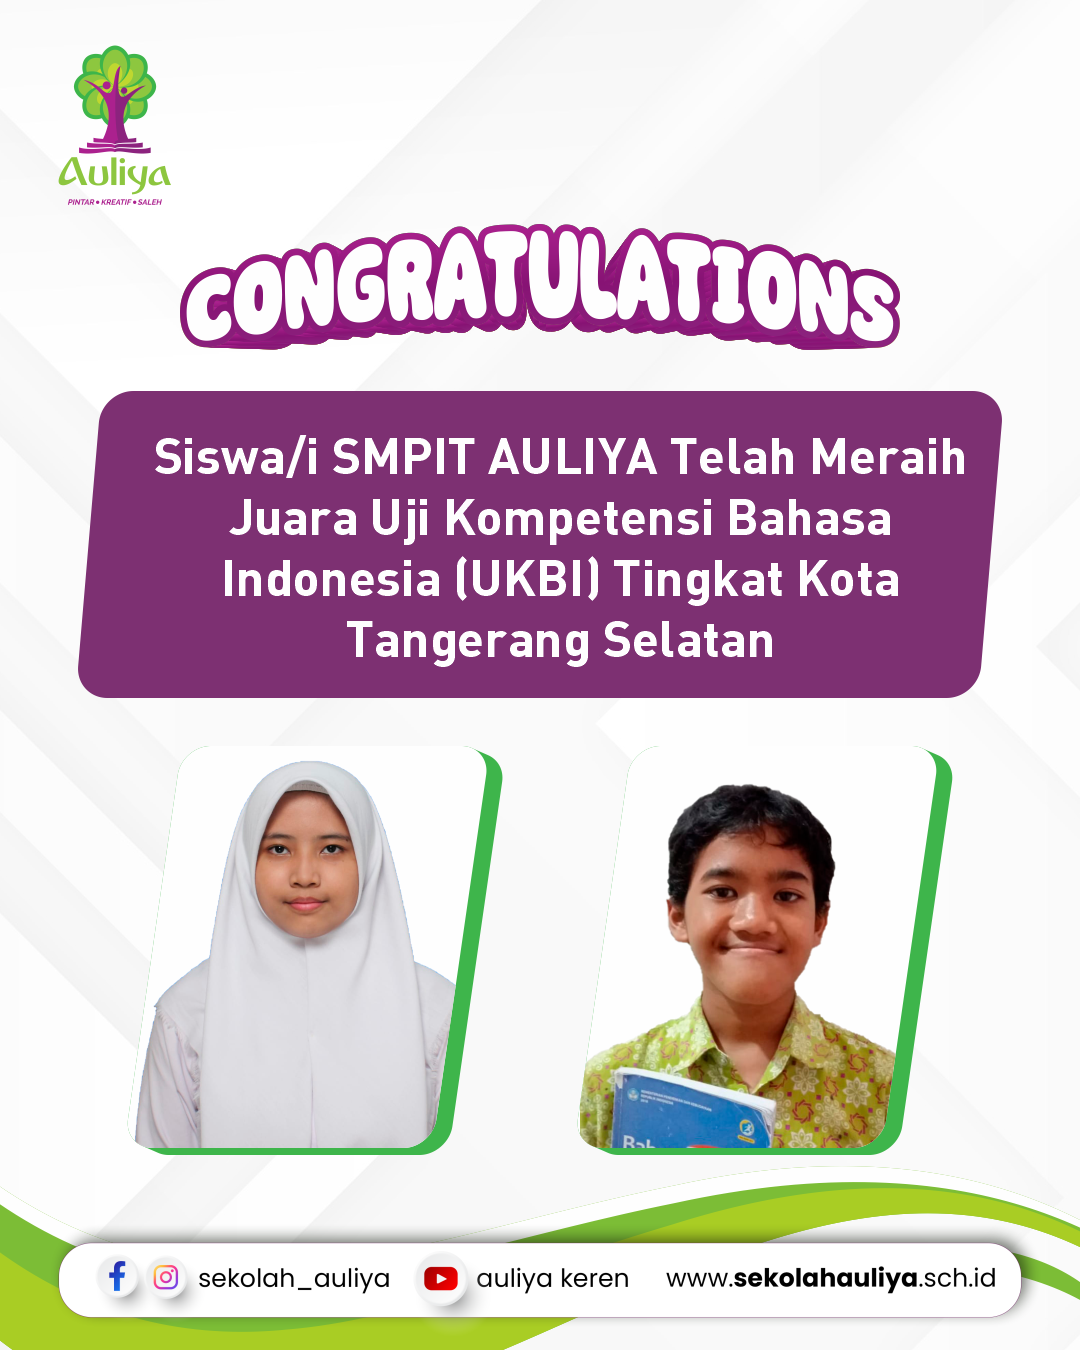  Siswa/i SMPIT AULIYA Telah Meraih Juara Uji Kompetensi Bahasa Indonesia (UKBI) Tingkat Kota Tangerang Selatan